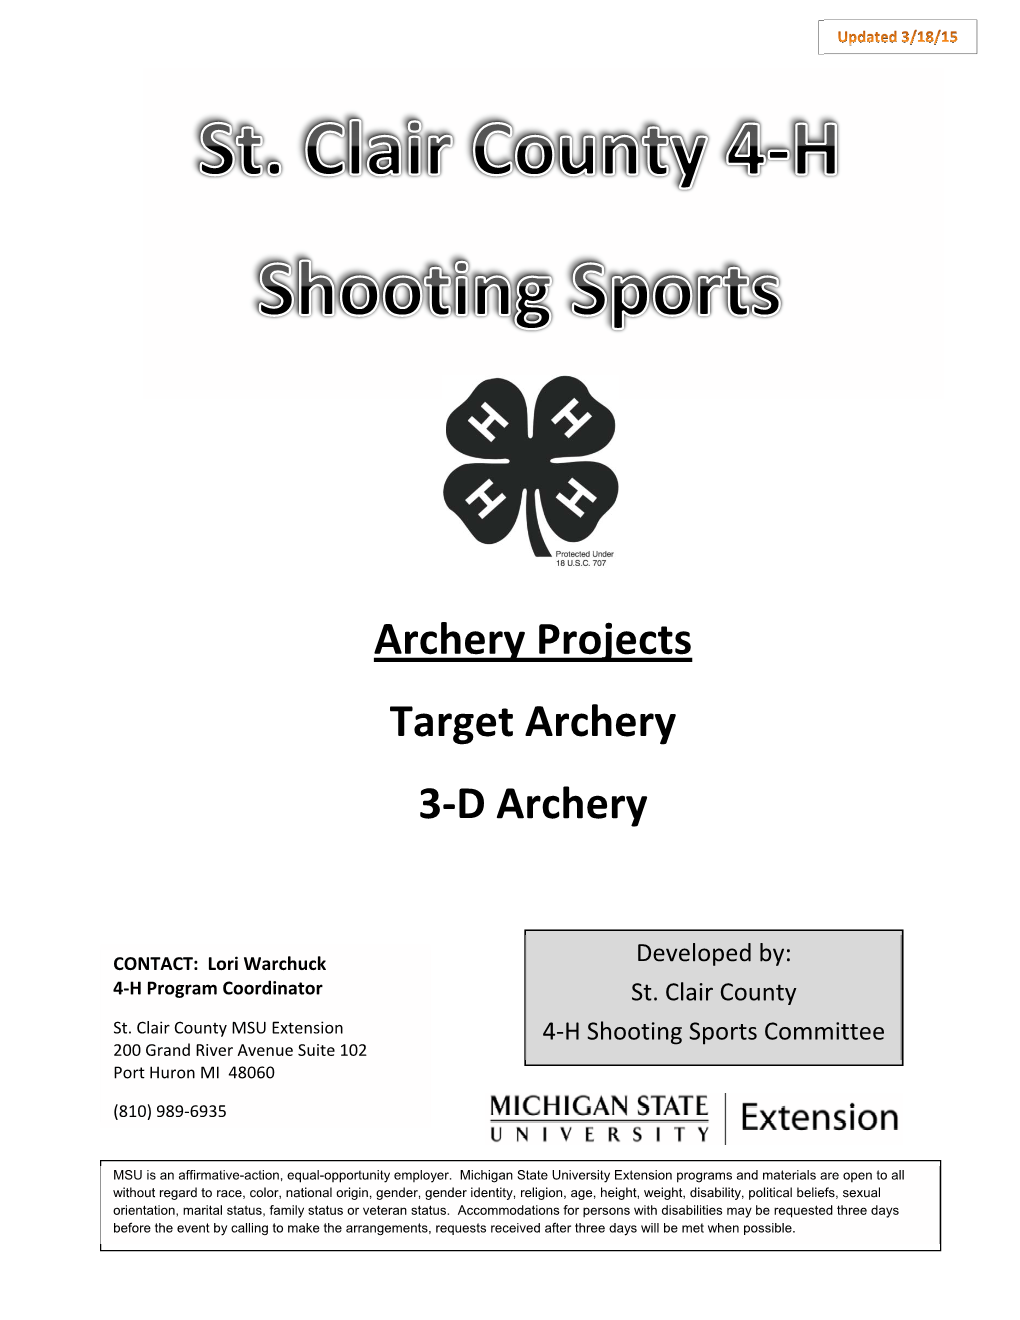 Archery Projects Target Archery 3-D Archery